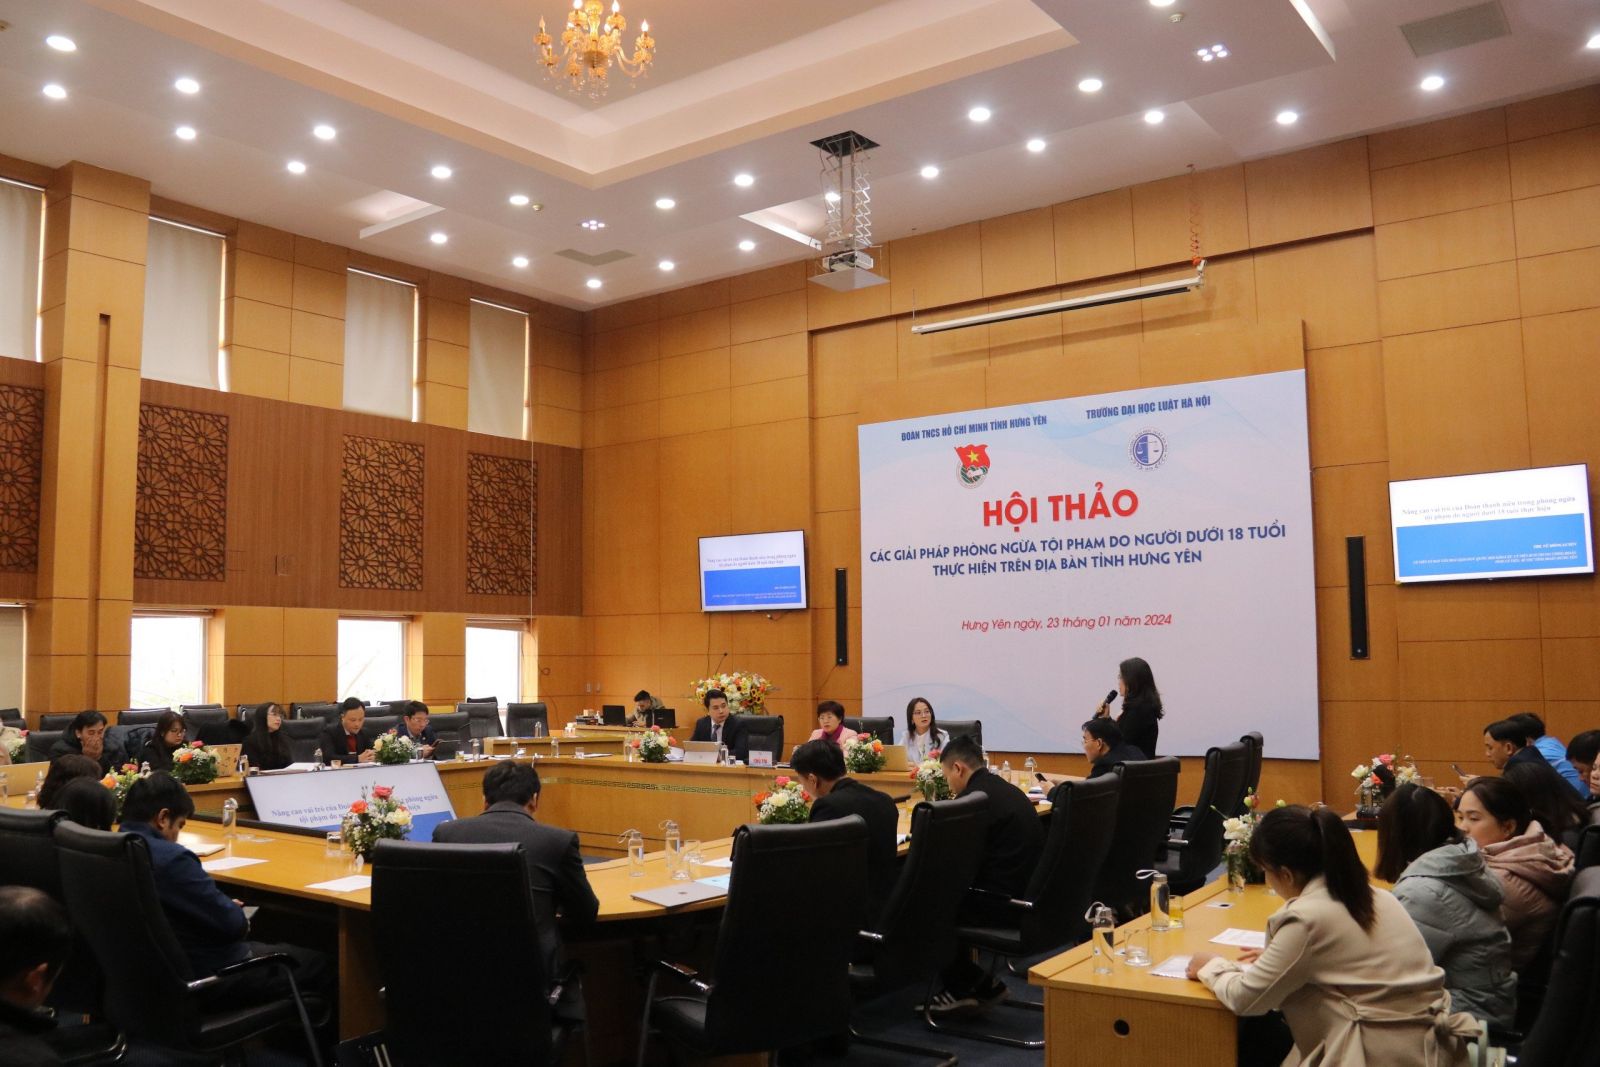 Hội thảo các giải pháp phòng ngừa tội phạm do người dưới 18 tuổi thực hiện trên địa bàn tỉnh Hưng Yên